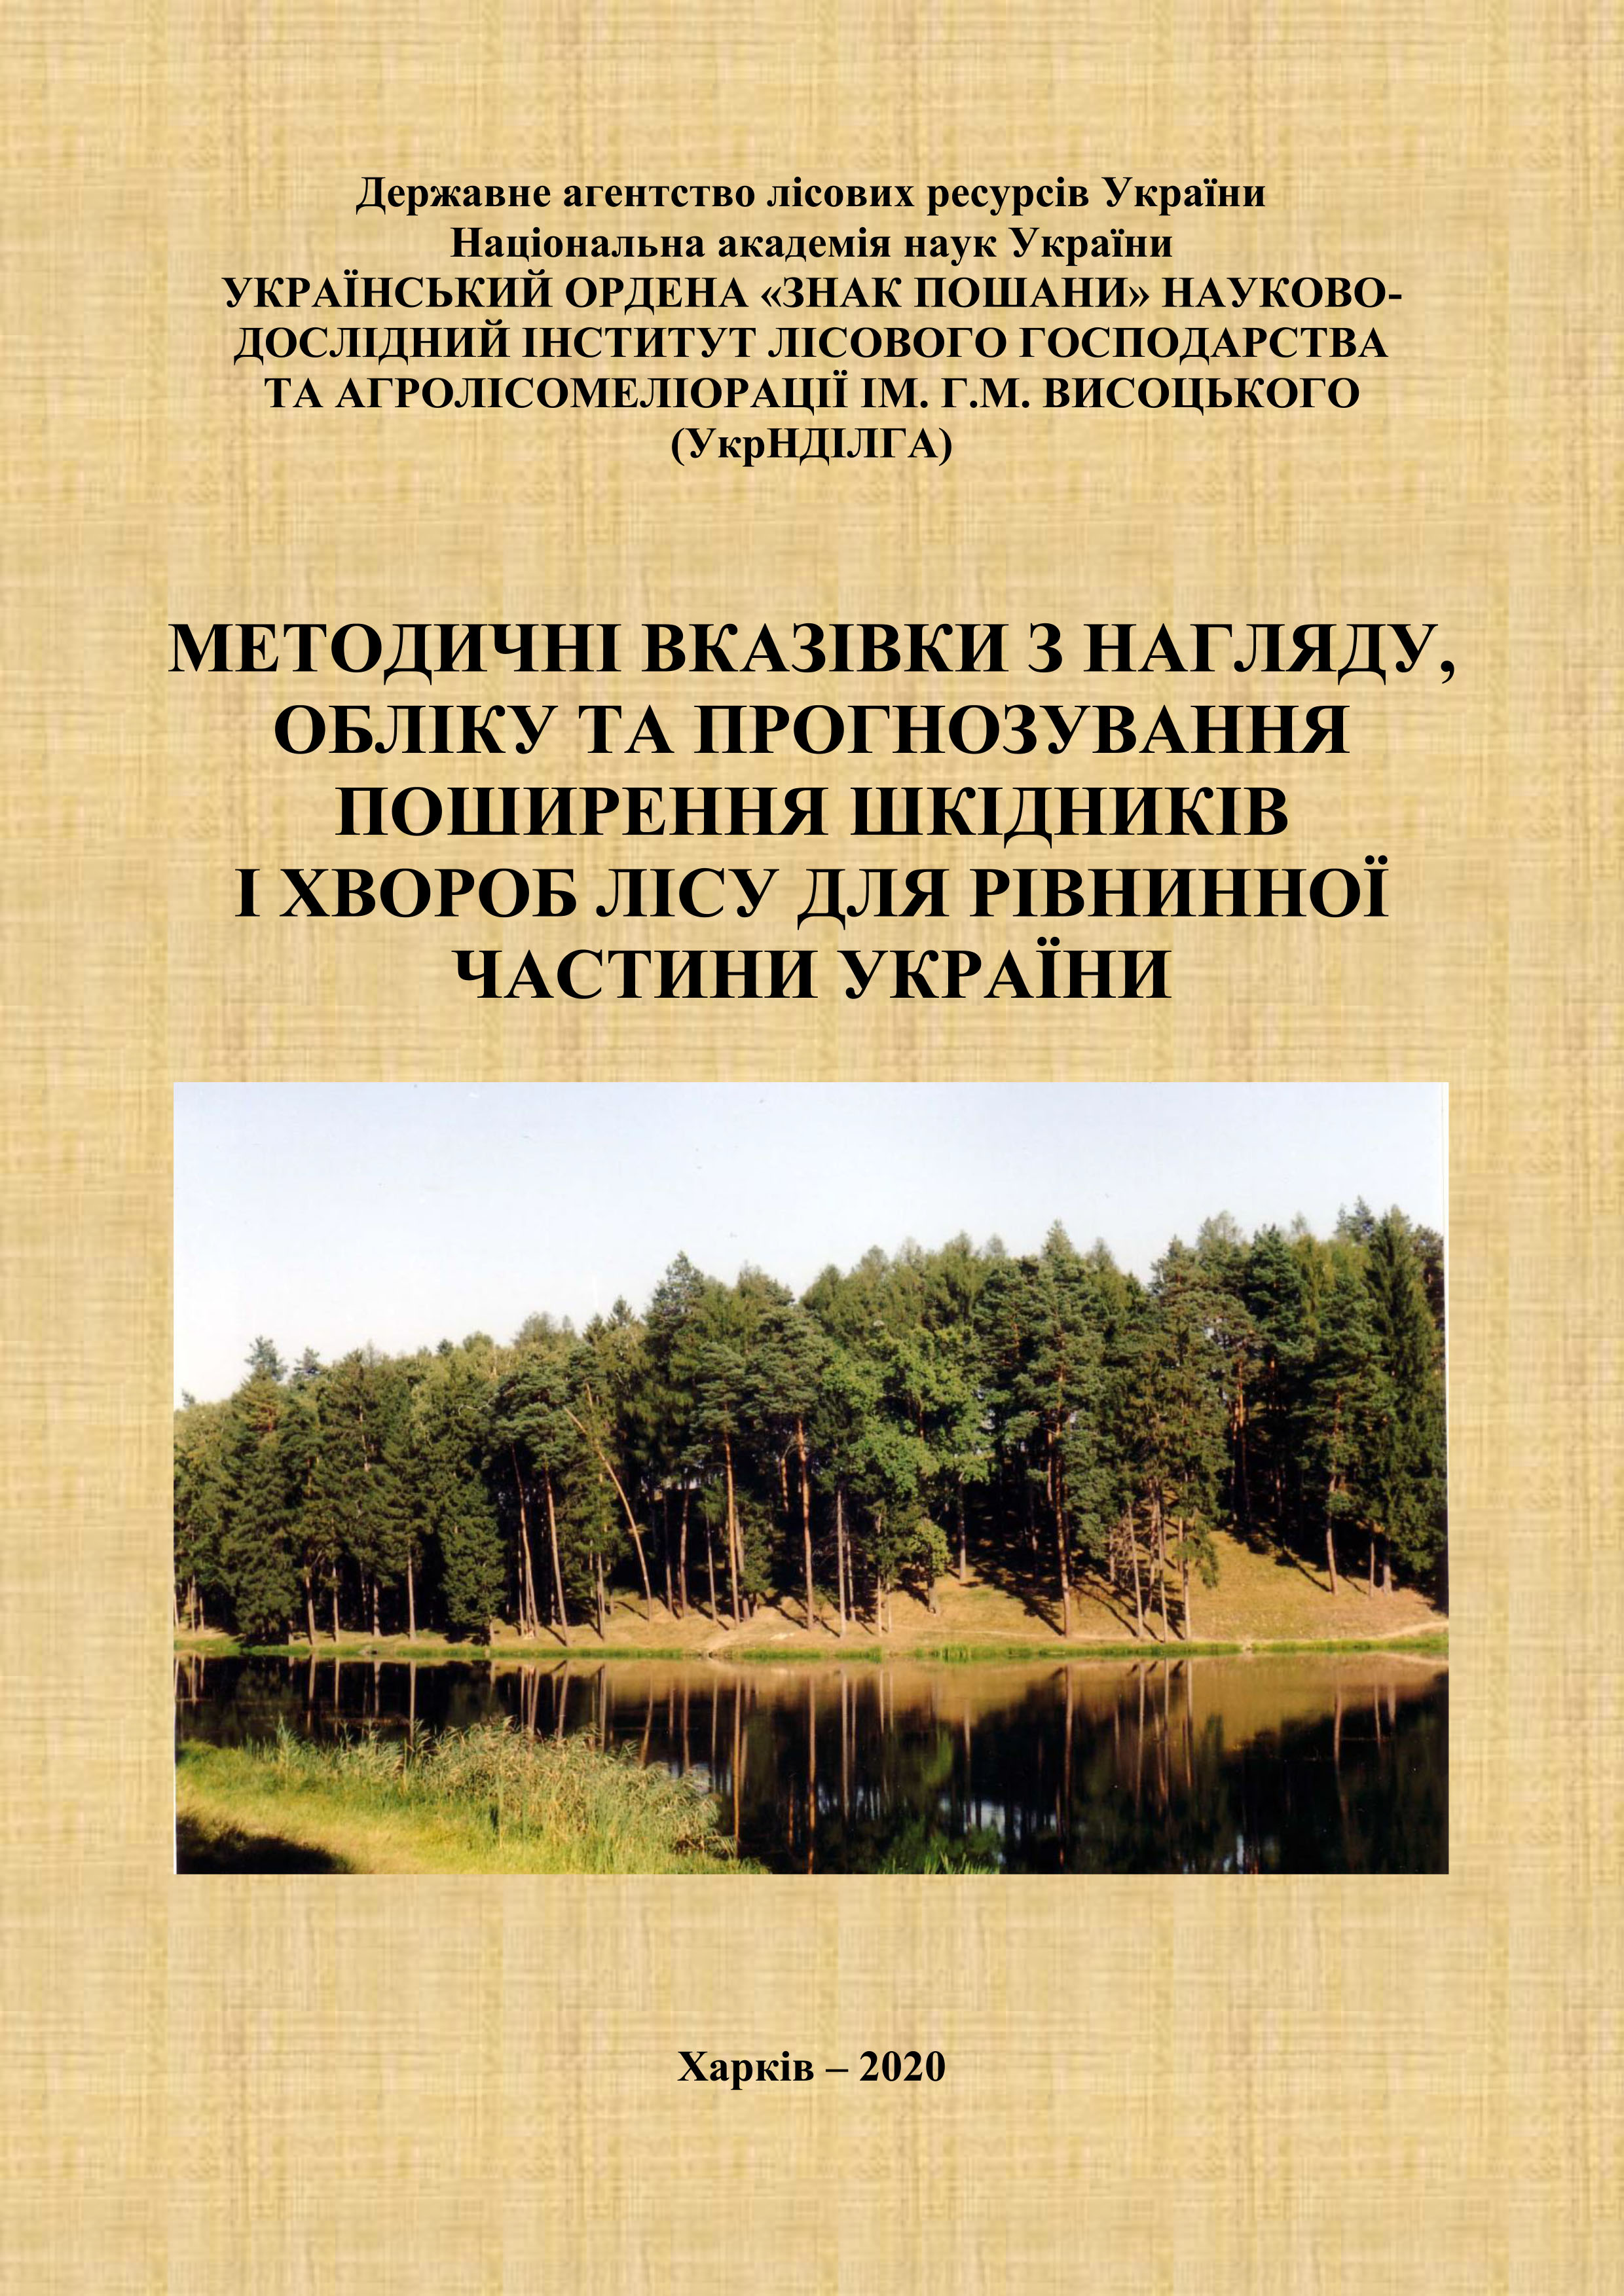 Методичні вказівки з нагляду, обліку та прогнозування поширення шкідників і хвороб лісу для рівнинної частини України